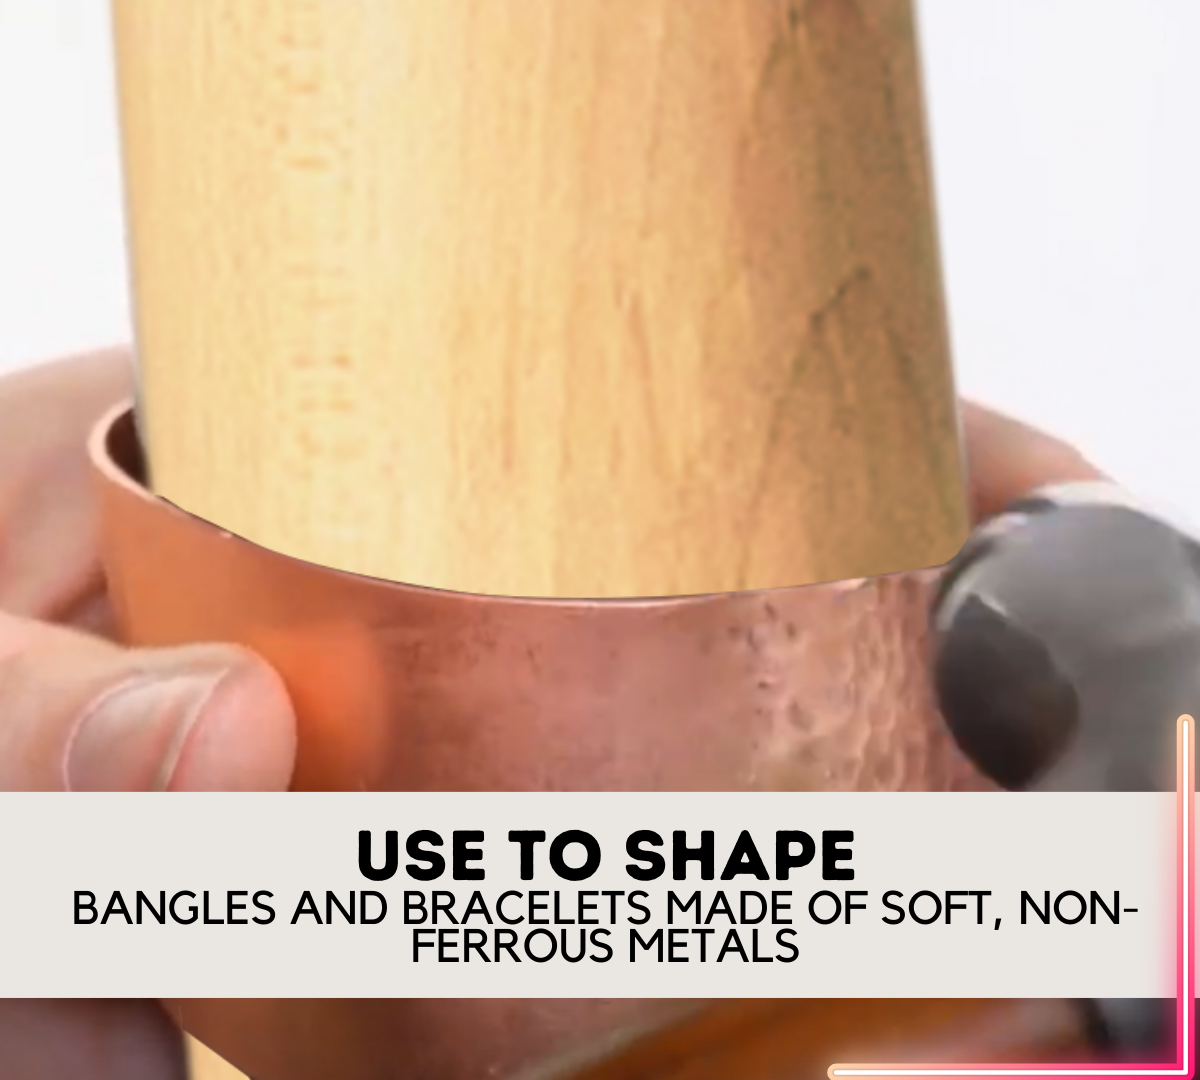 Bracelet Mandrel | 20" (50.8 cm) Solid Hardwood | 5" (12.7 cm) Easy Grip Handle | Tapered 2.75" (7 cm) to 1.5" (3.8 cm) Working Area - TJ-17117